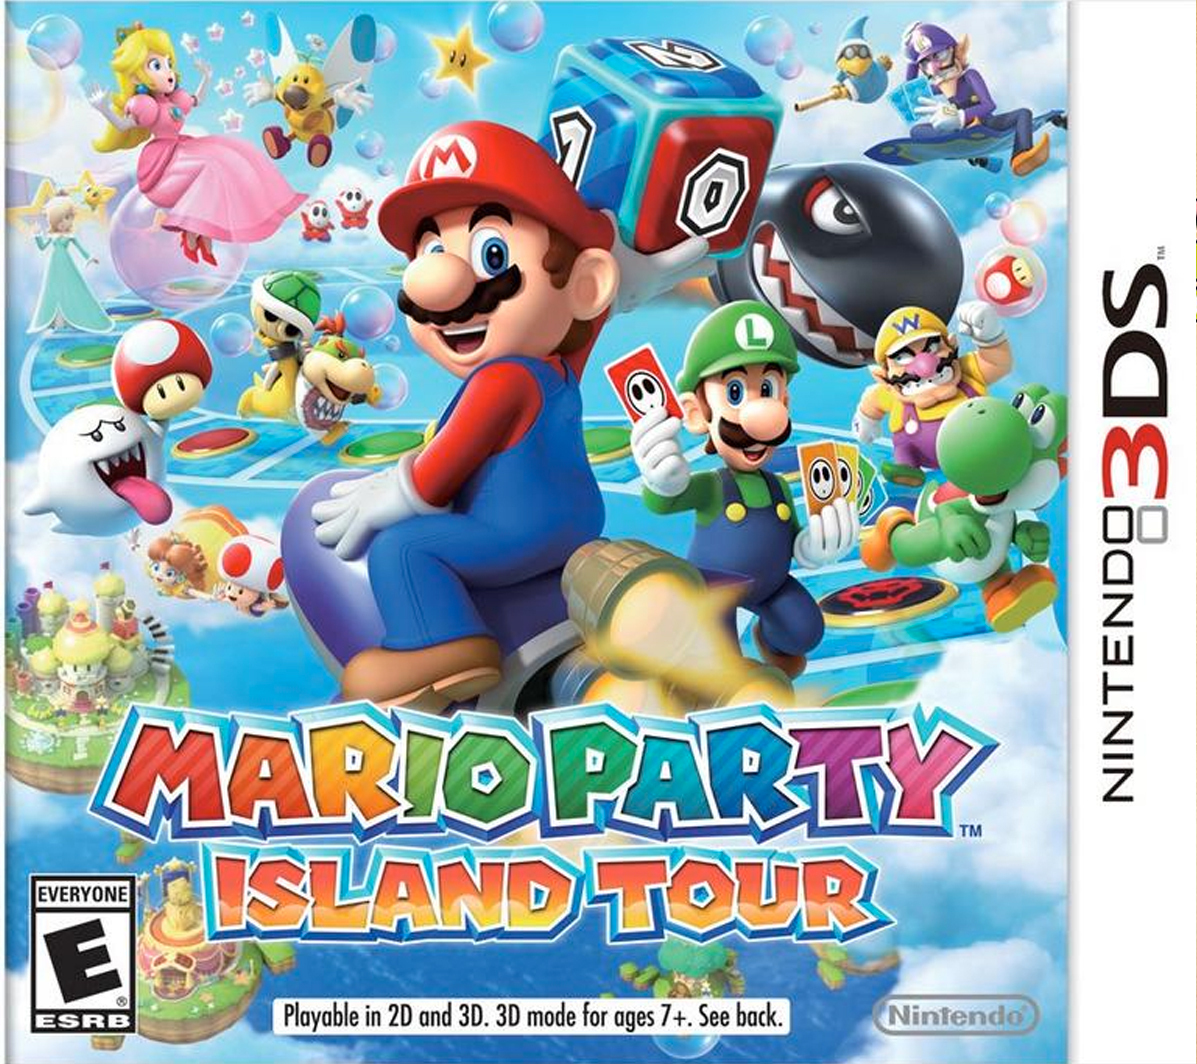 Mario party island tour